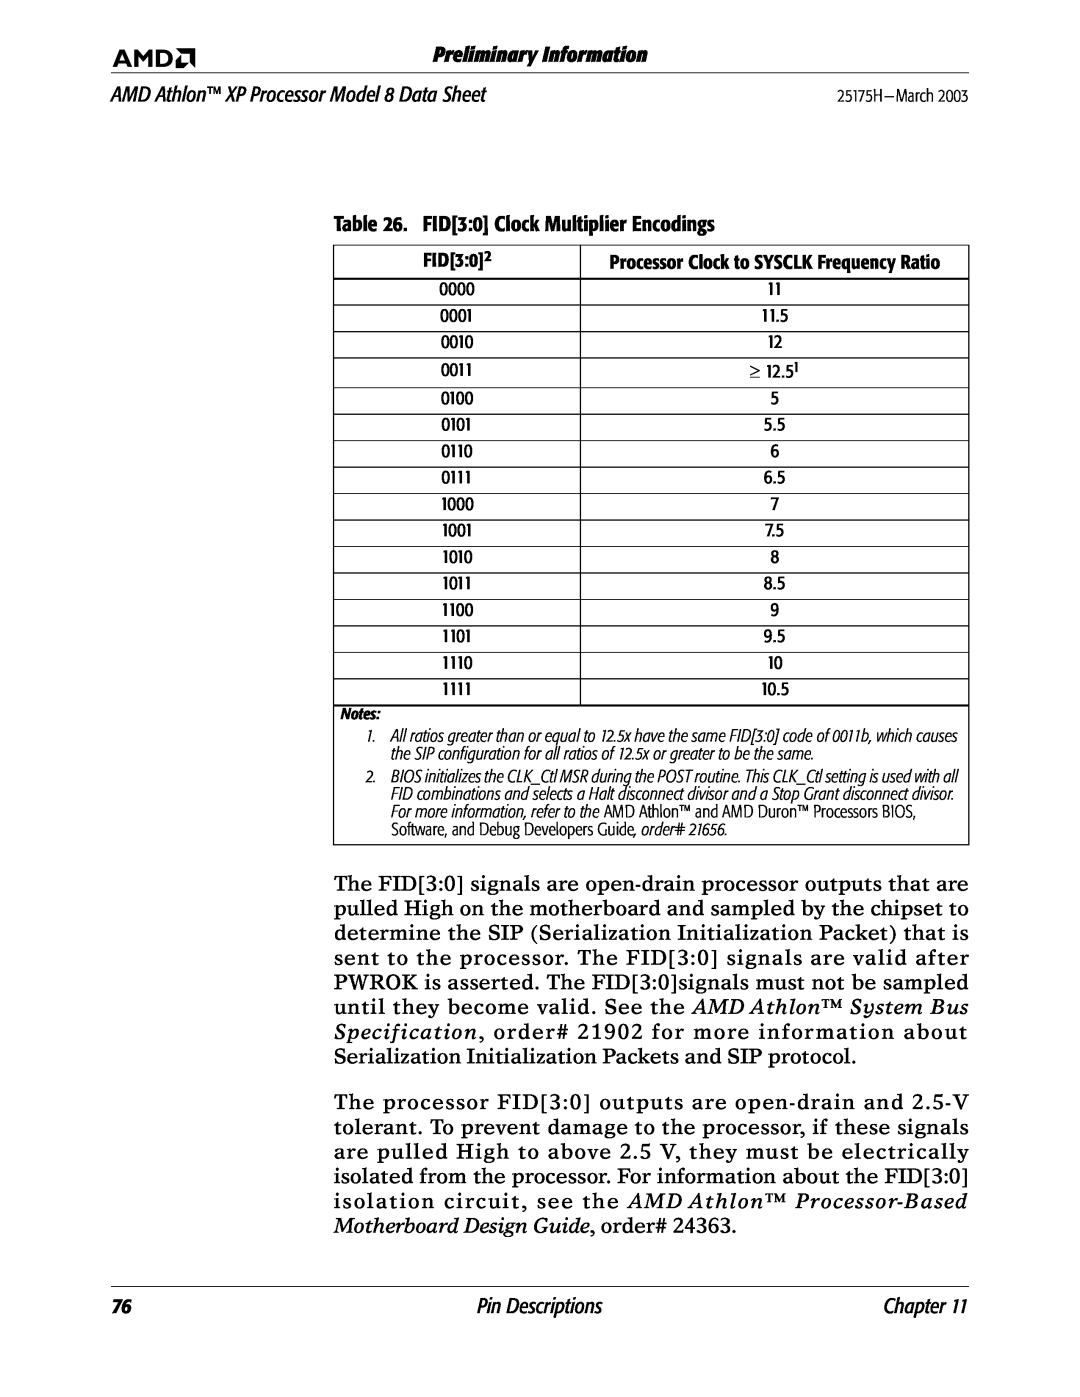 AMD manual FID30 Clock Multiplier Encodings, Preliminary Information, AMD Athlon XP Processor Model 8 Data Sheet 